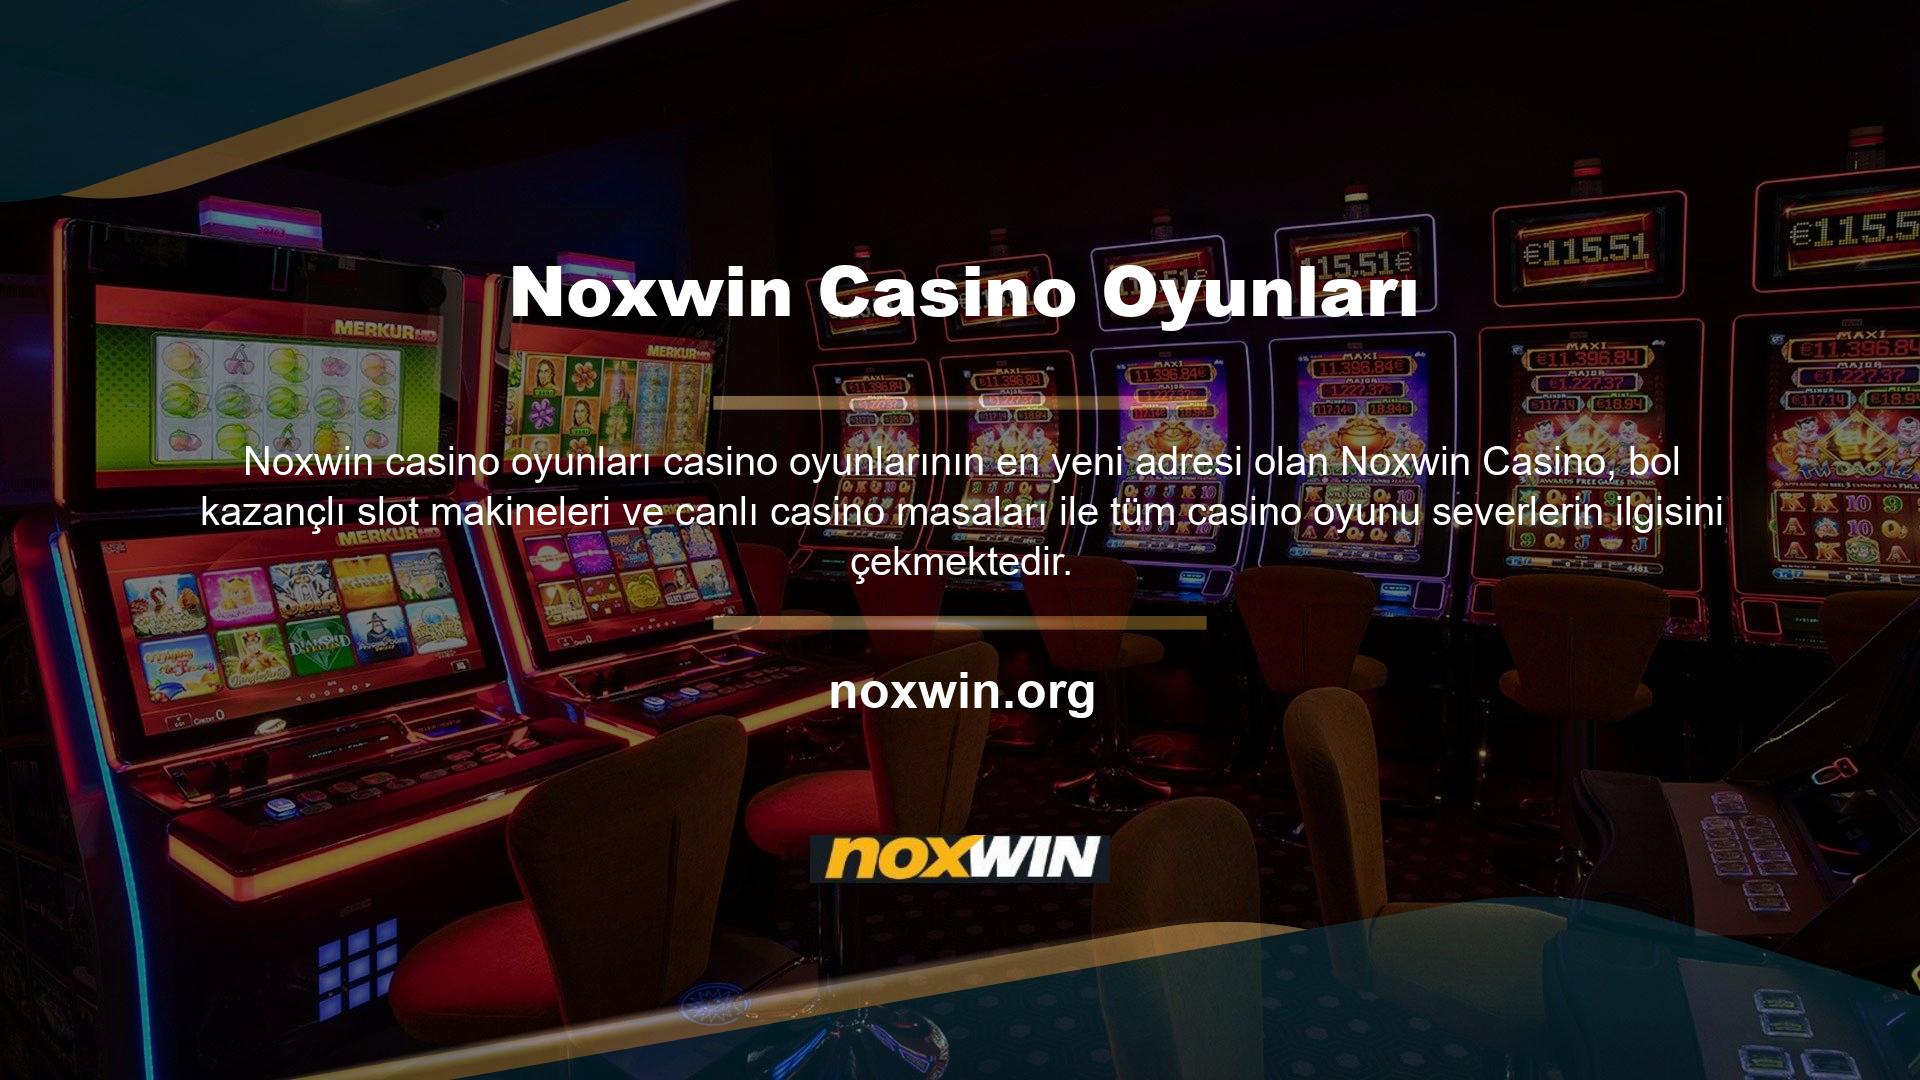 Özellikle casino oyunlarında kazanmaya devam etmek için şansa güvenen kullanıcılar Noxwin asla vazgeçemezler